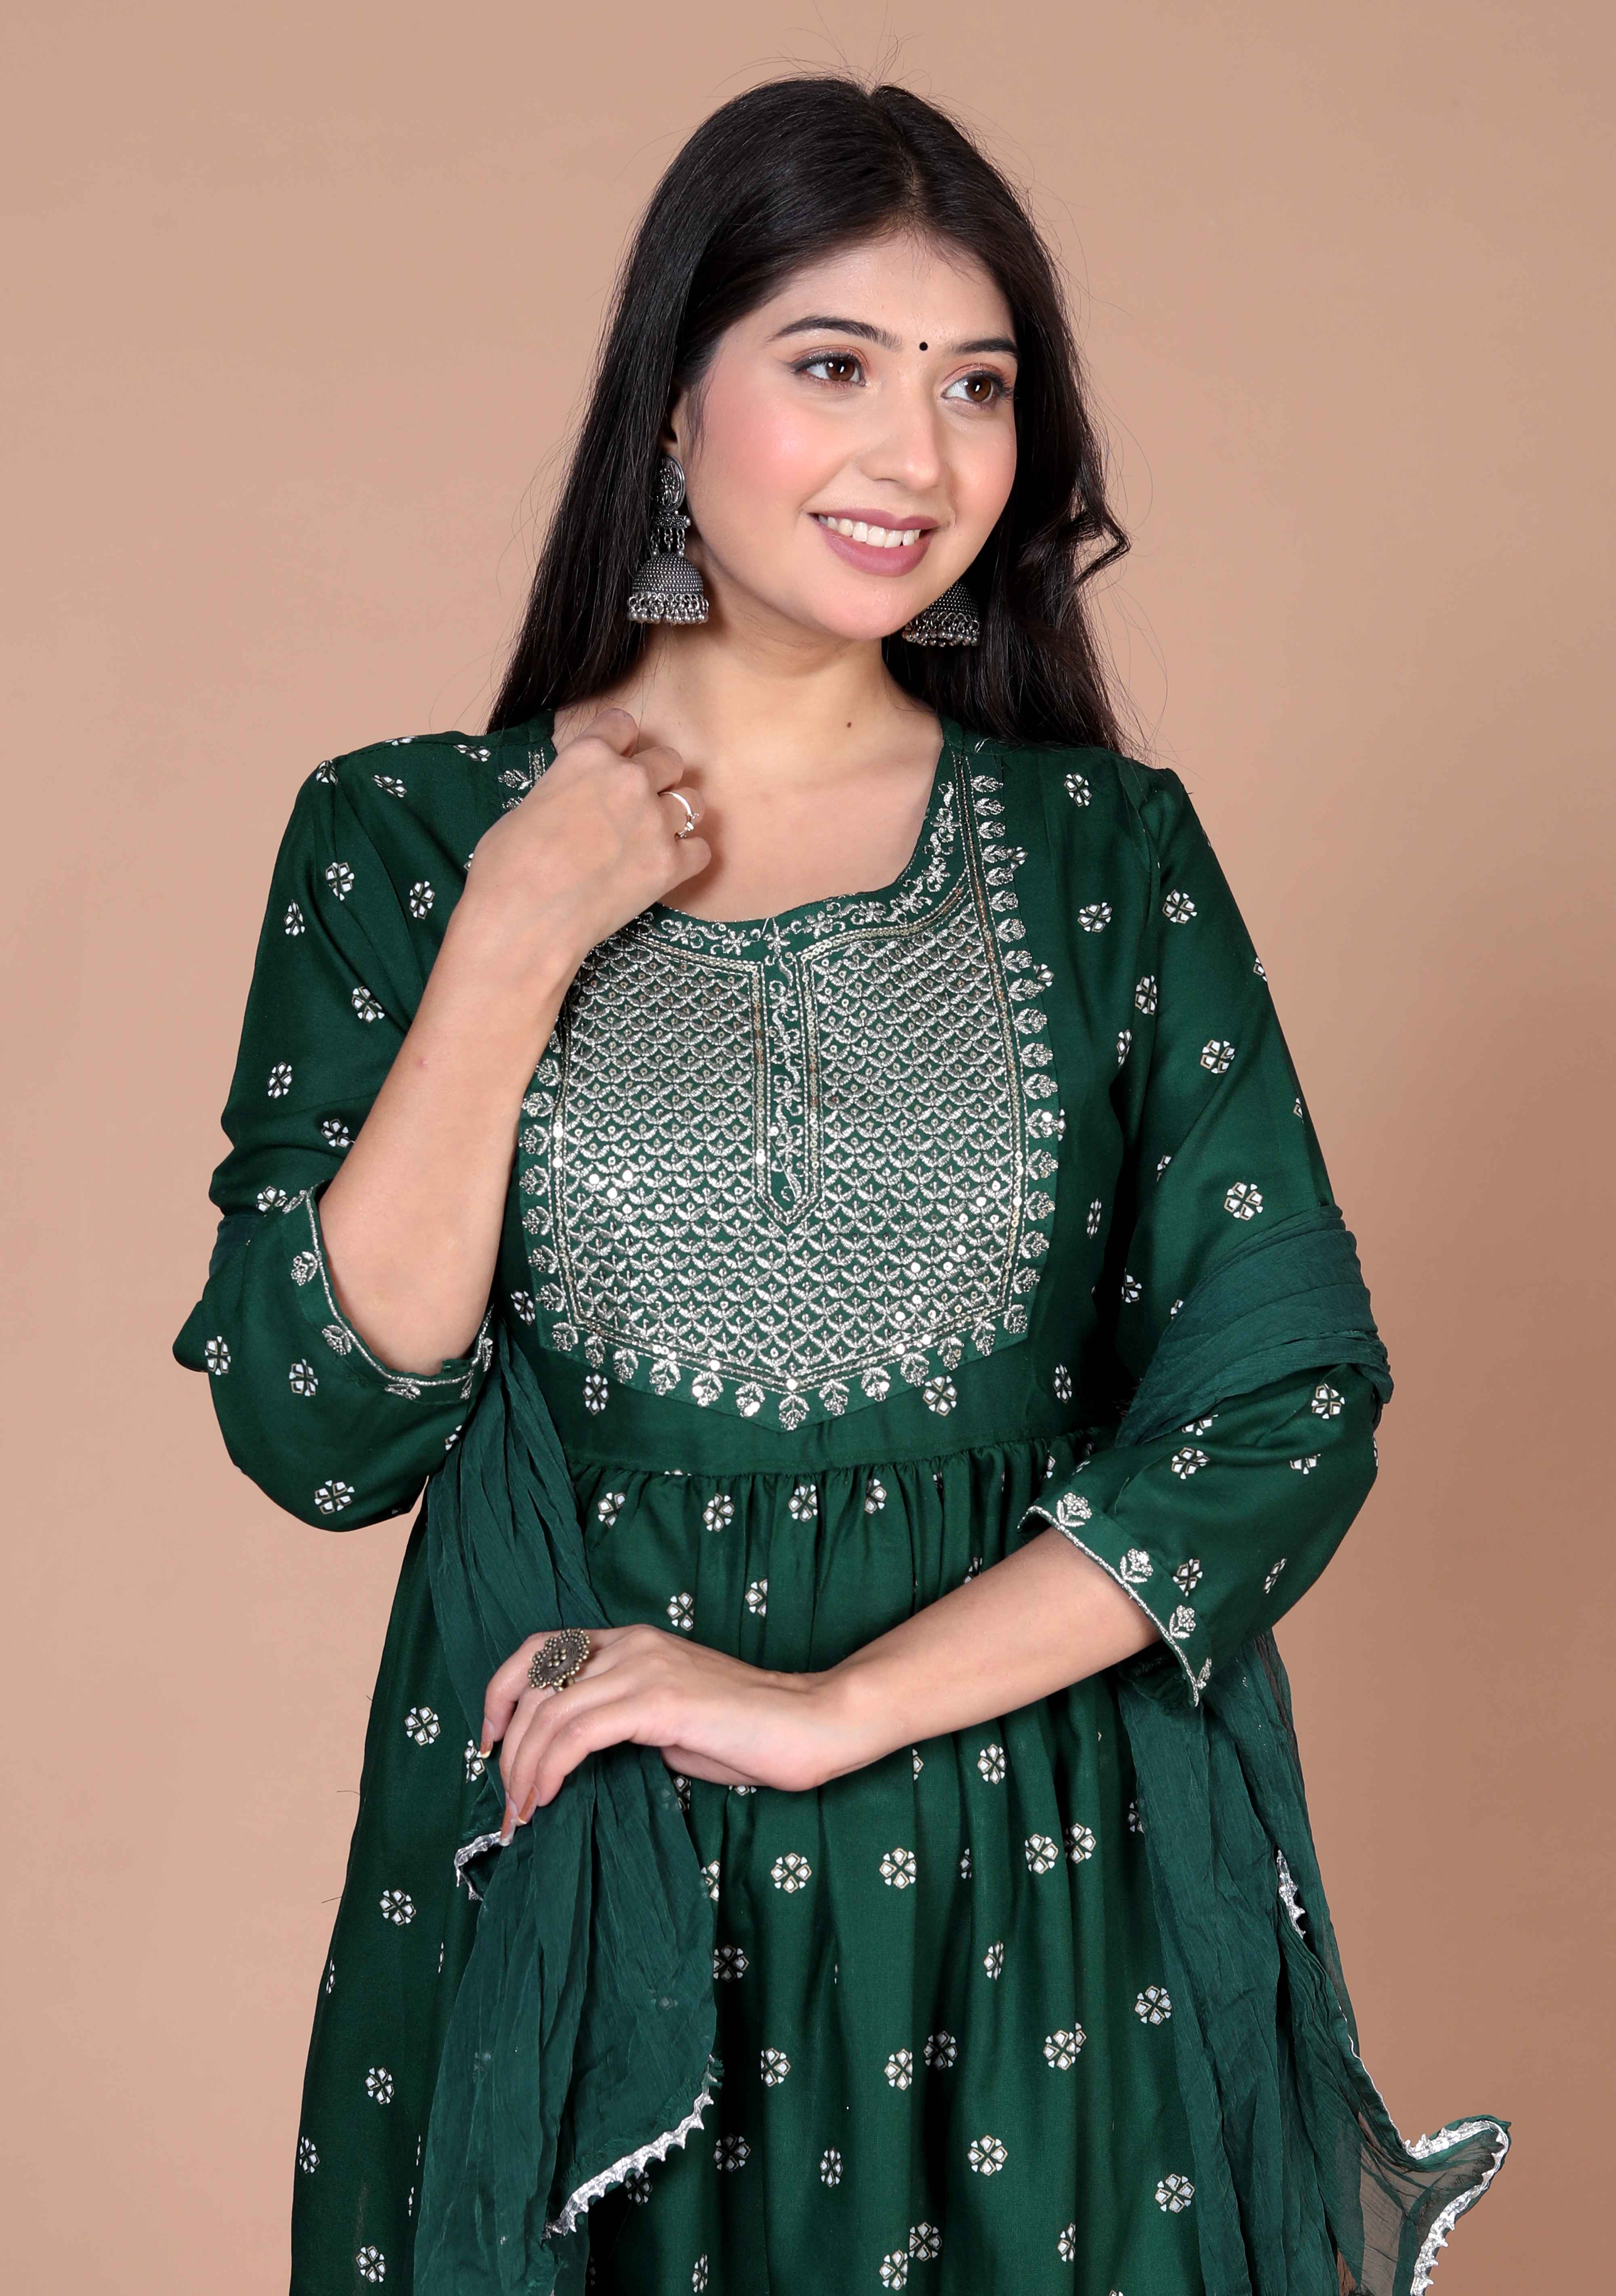 Women's Green Embroidery Nayra Cut Kurta And Palazzo With Dupatta Set - Doriyaan